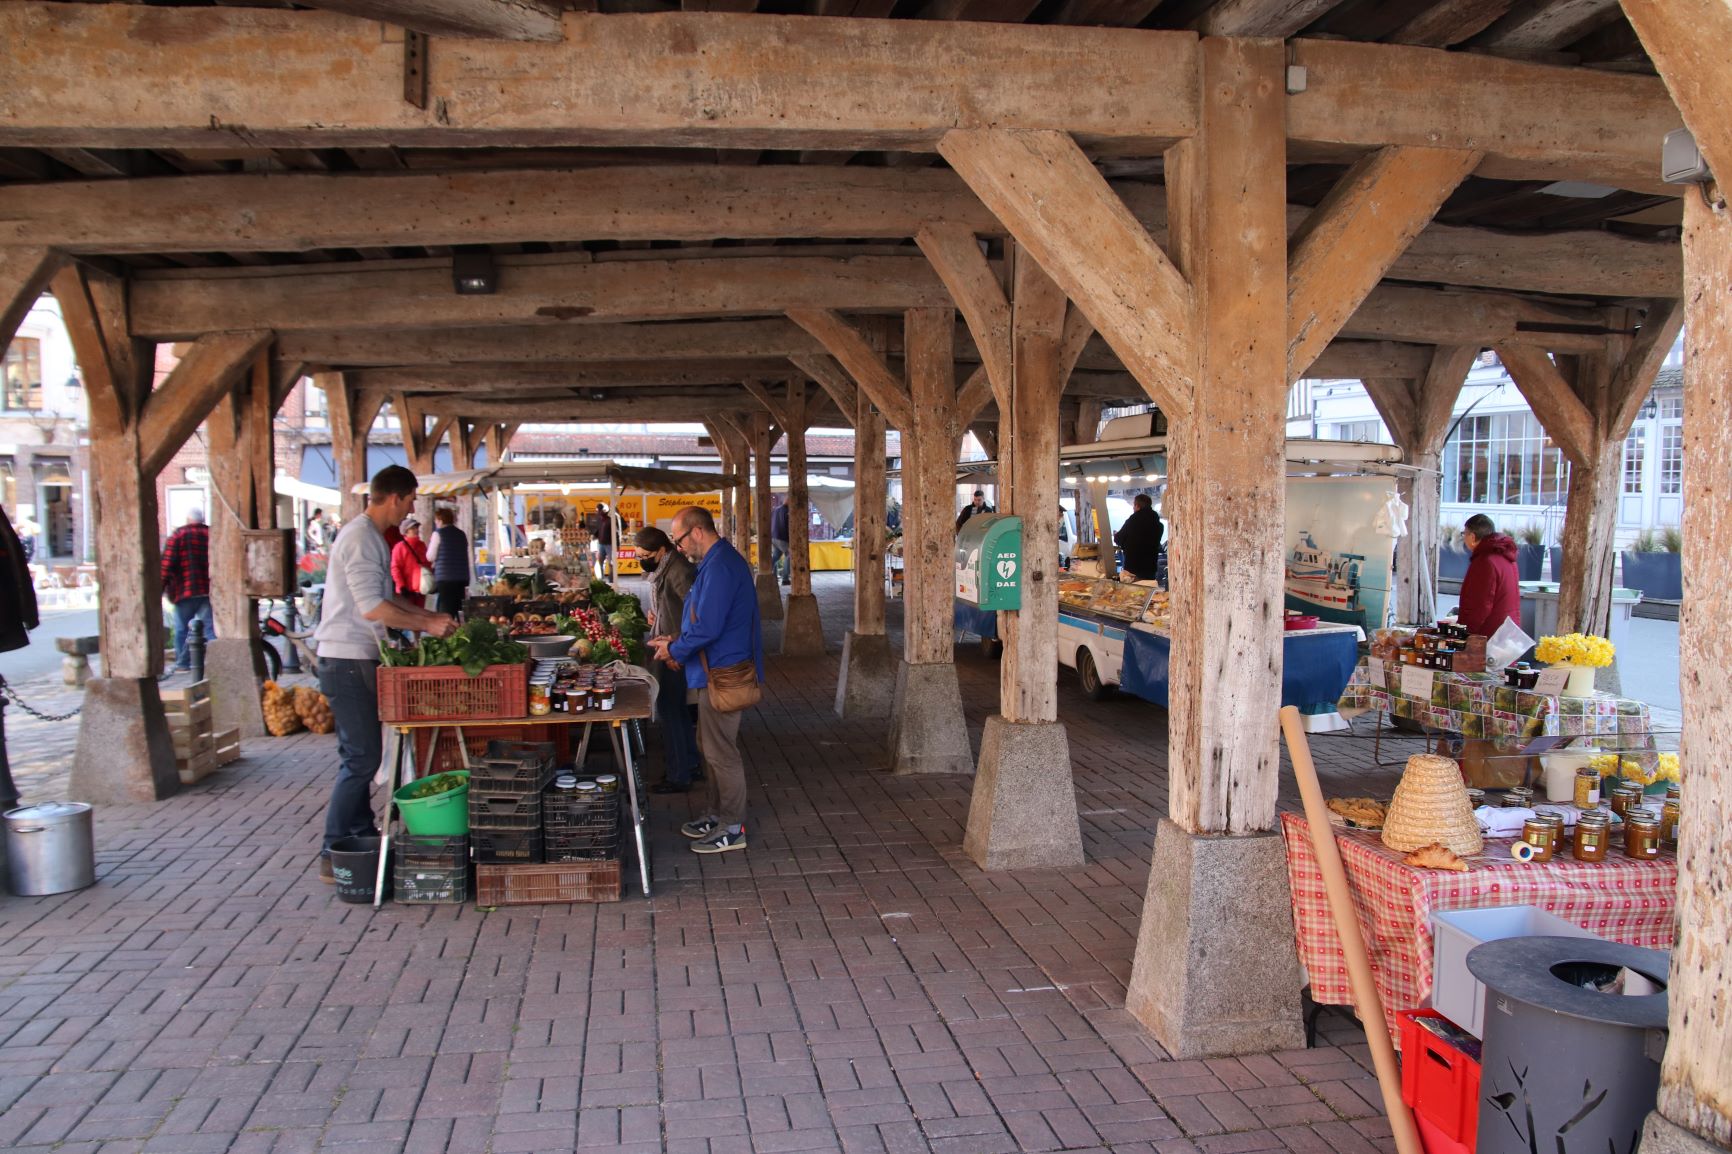 Bild: Markt am Sonntag in der Markhalle von Lyons-la-Forêt (Foto: Jürgen Friedrich)